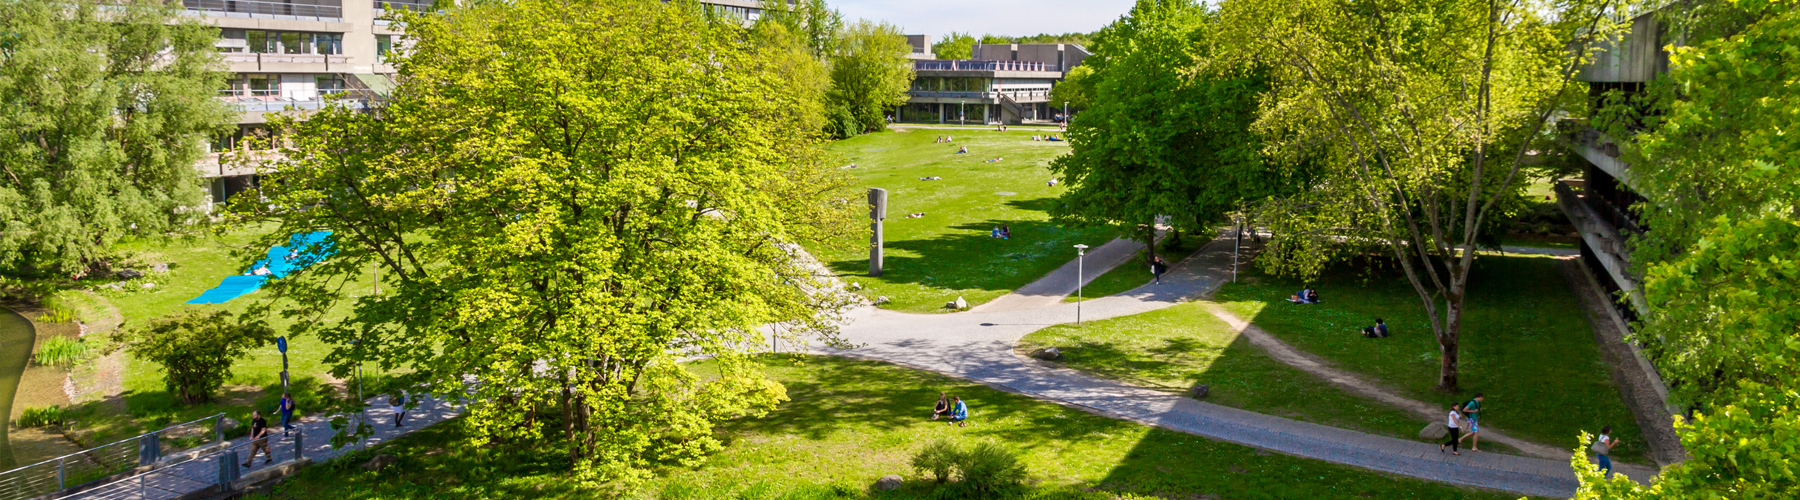 Auf dem Campus der Universität Regensburg studieren